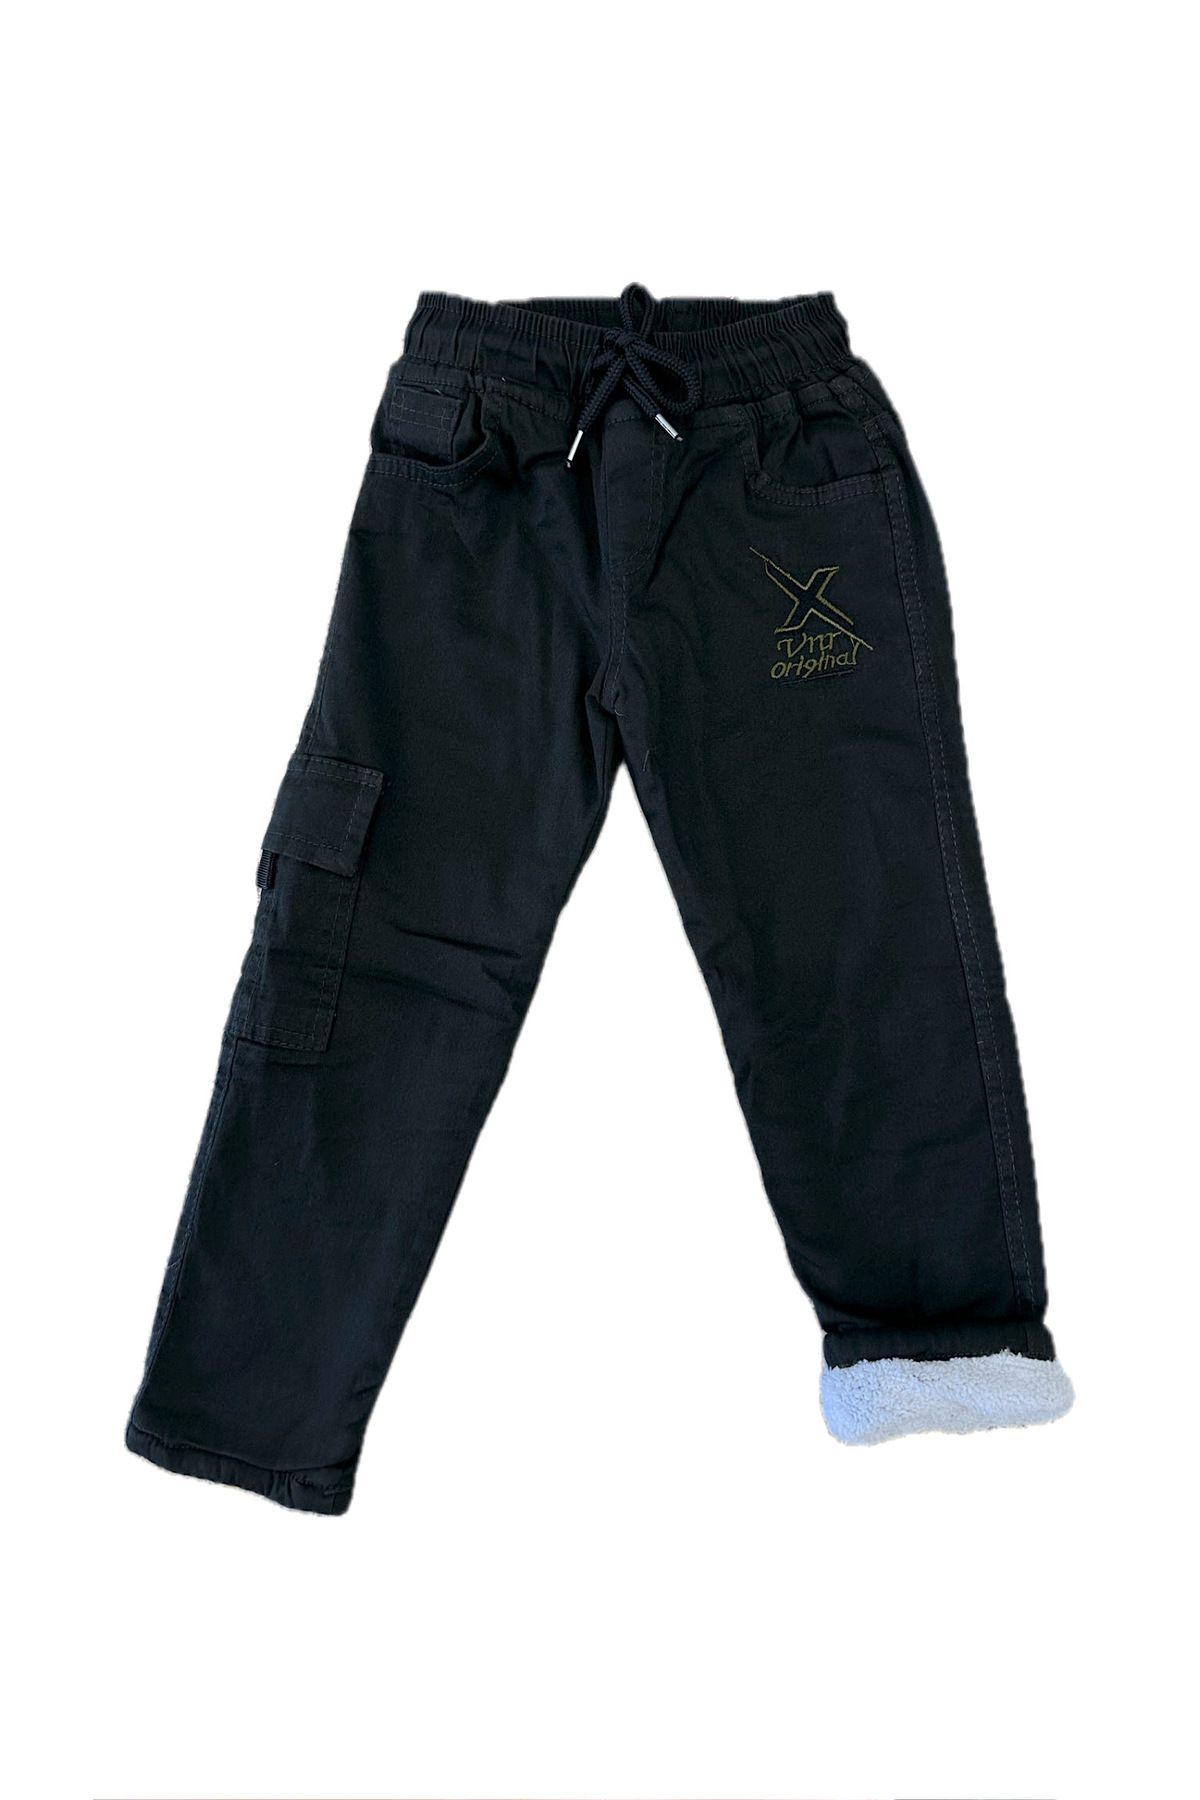 NİNYS BABY Beli Lastikli Kışlık Polar Welsoft Nakışlı Çocuk Pantolonu & Kargo Cepli Erkek/Çocuk